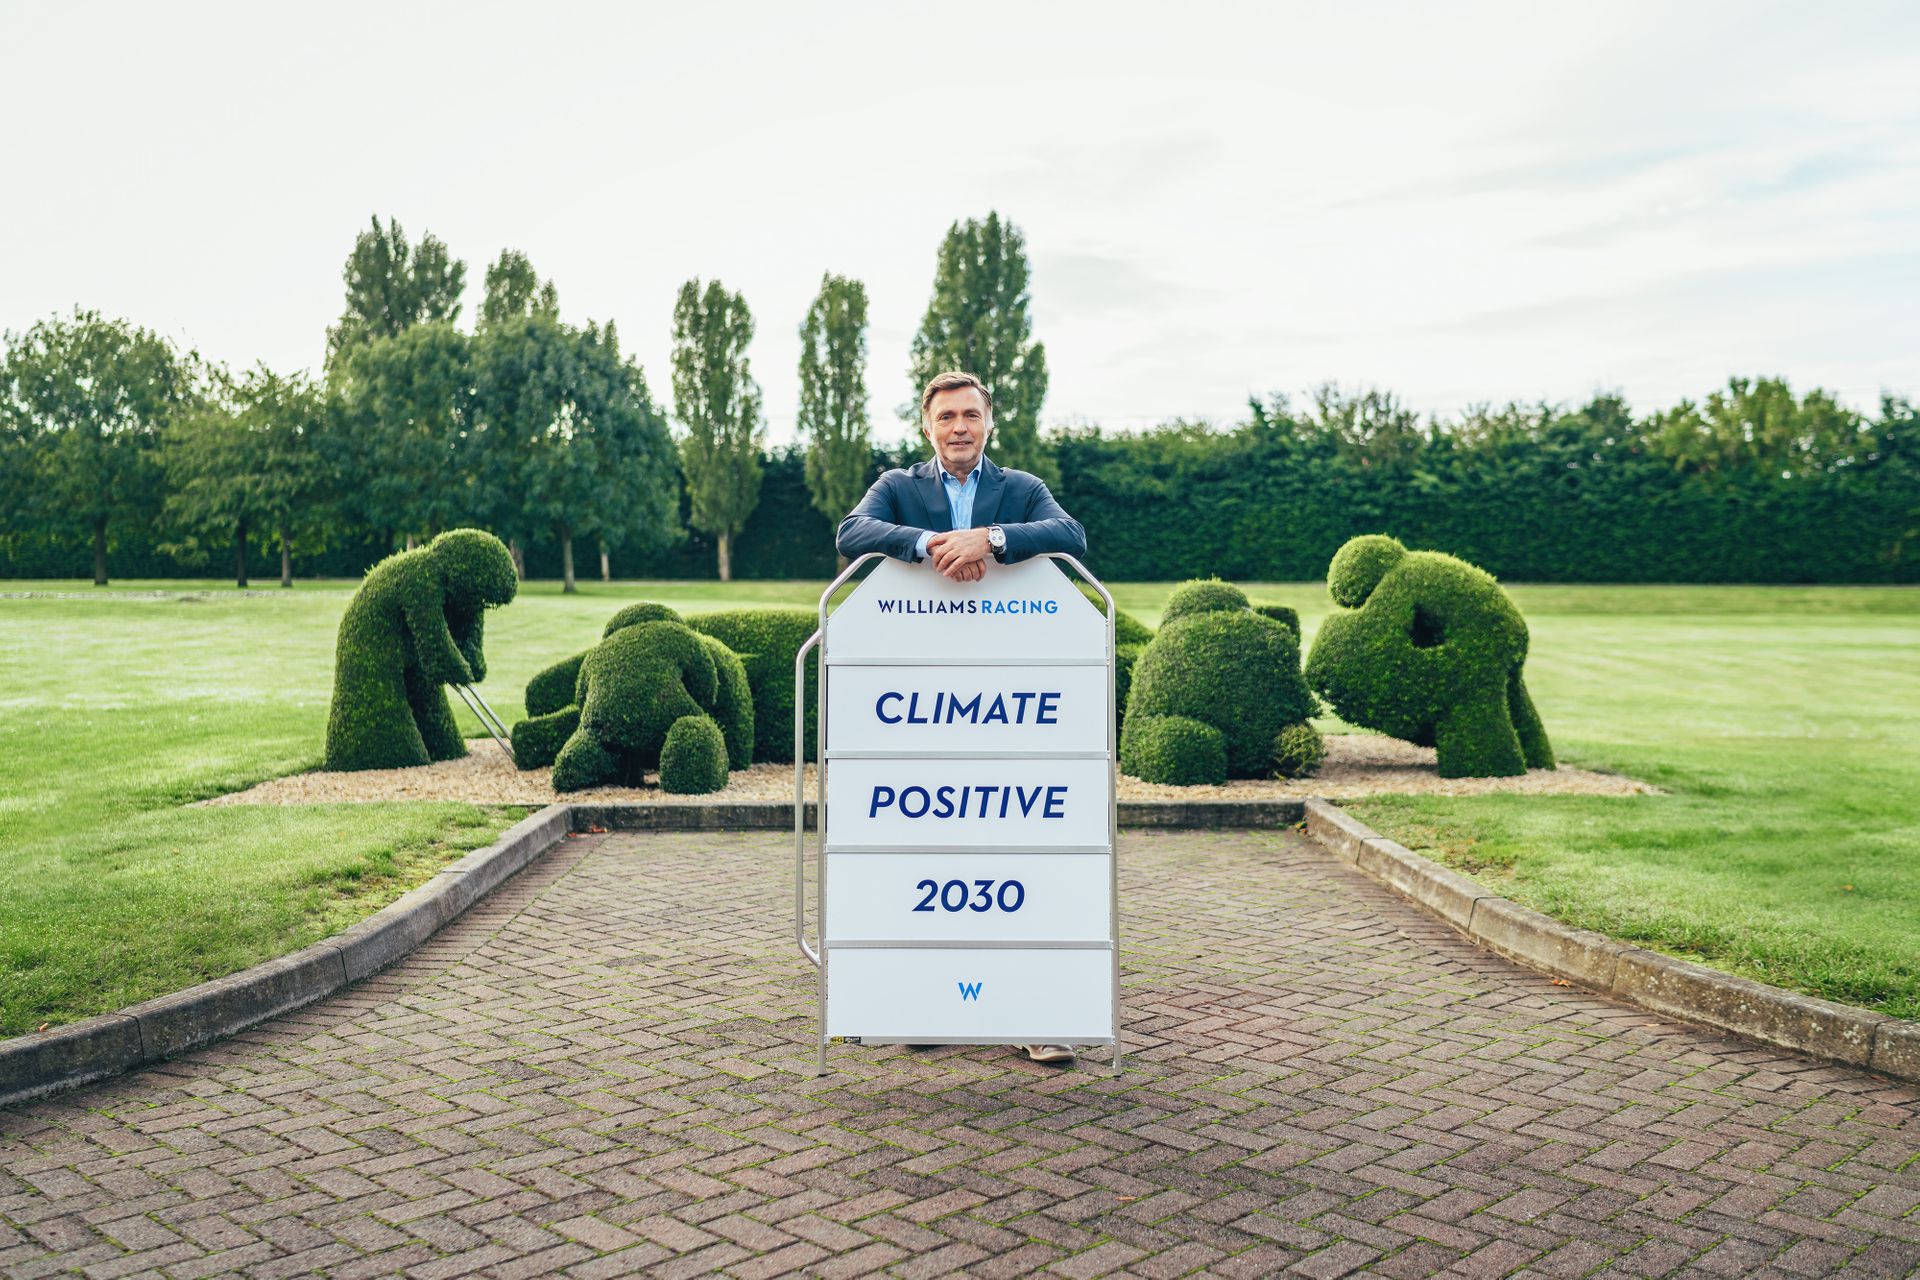 Jost Capito, CEO della Williams Racing, con il cartello "Climate Positive 2030"